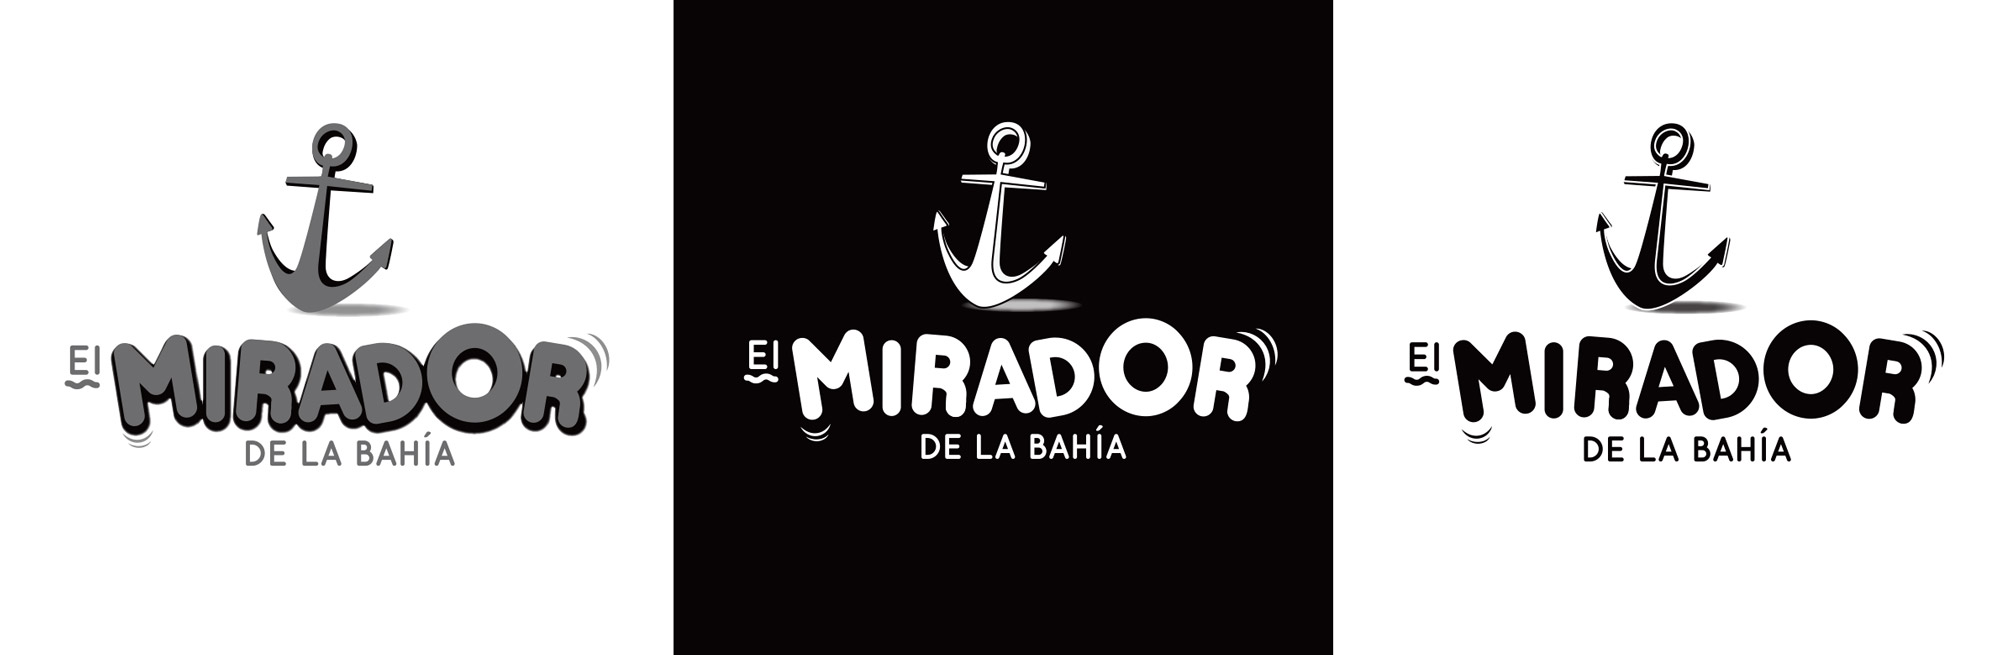 El mirador de la bahía - Logotipo versiones